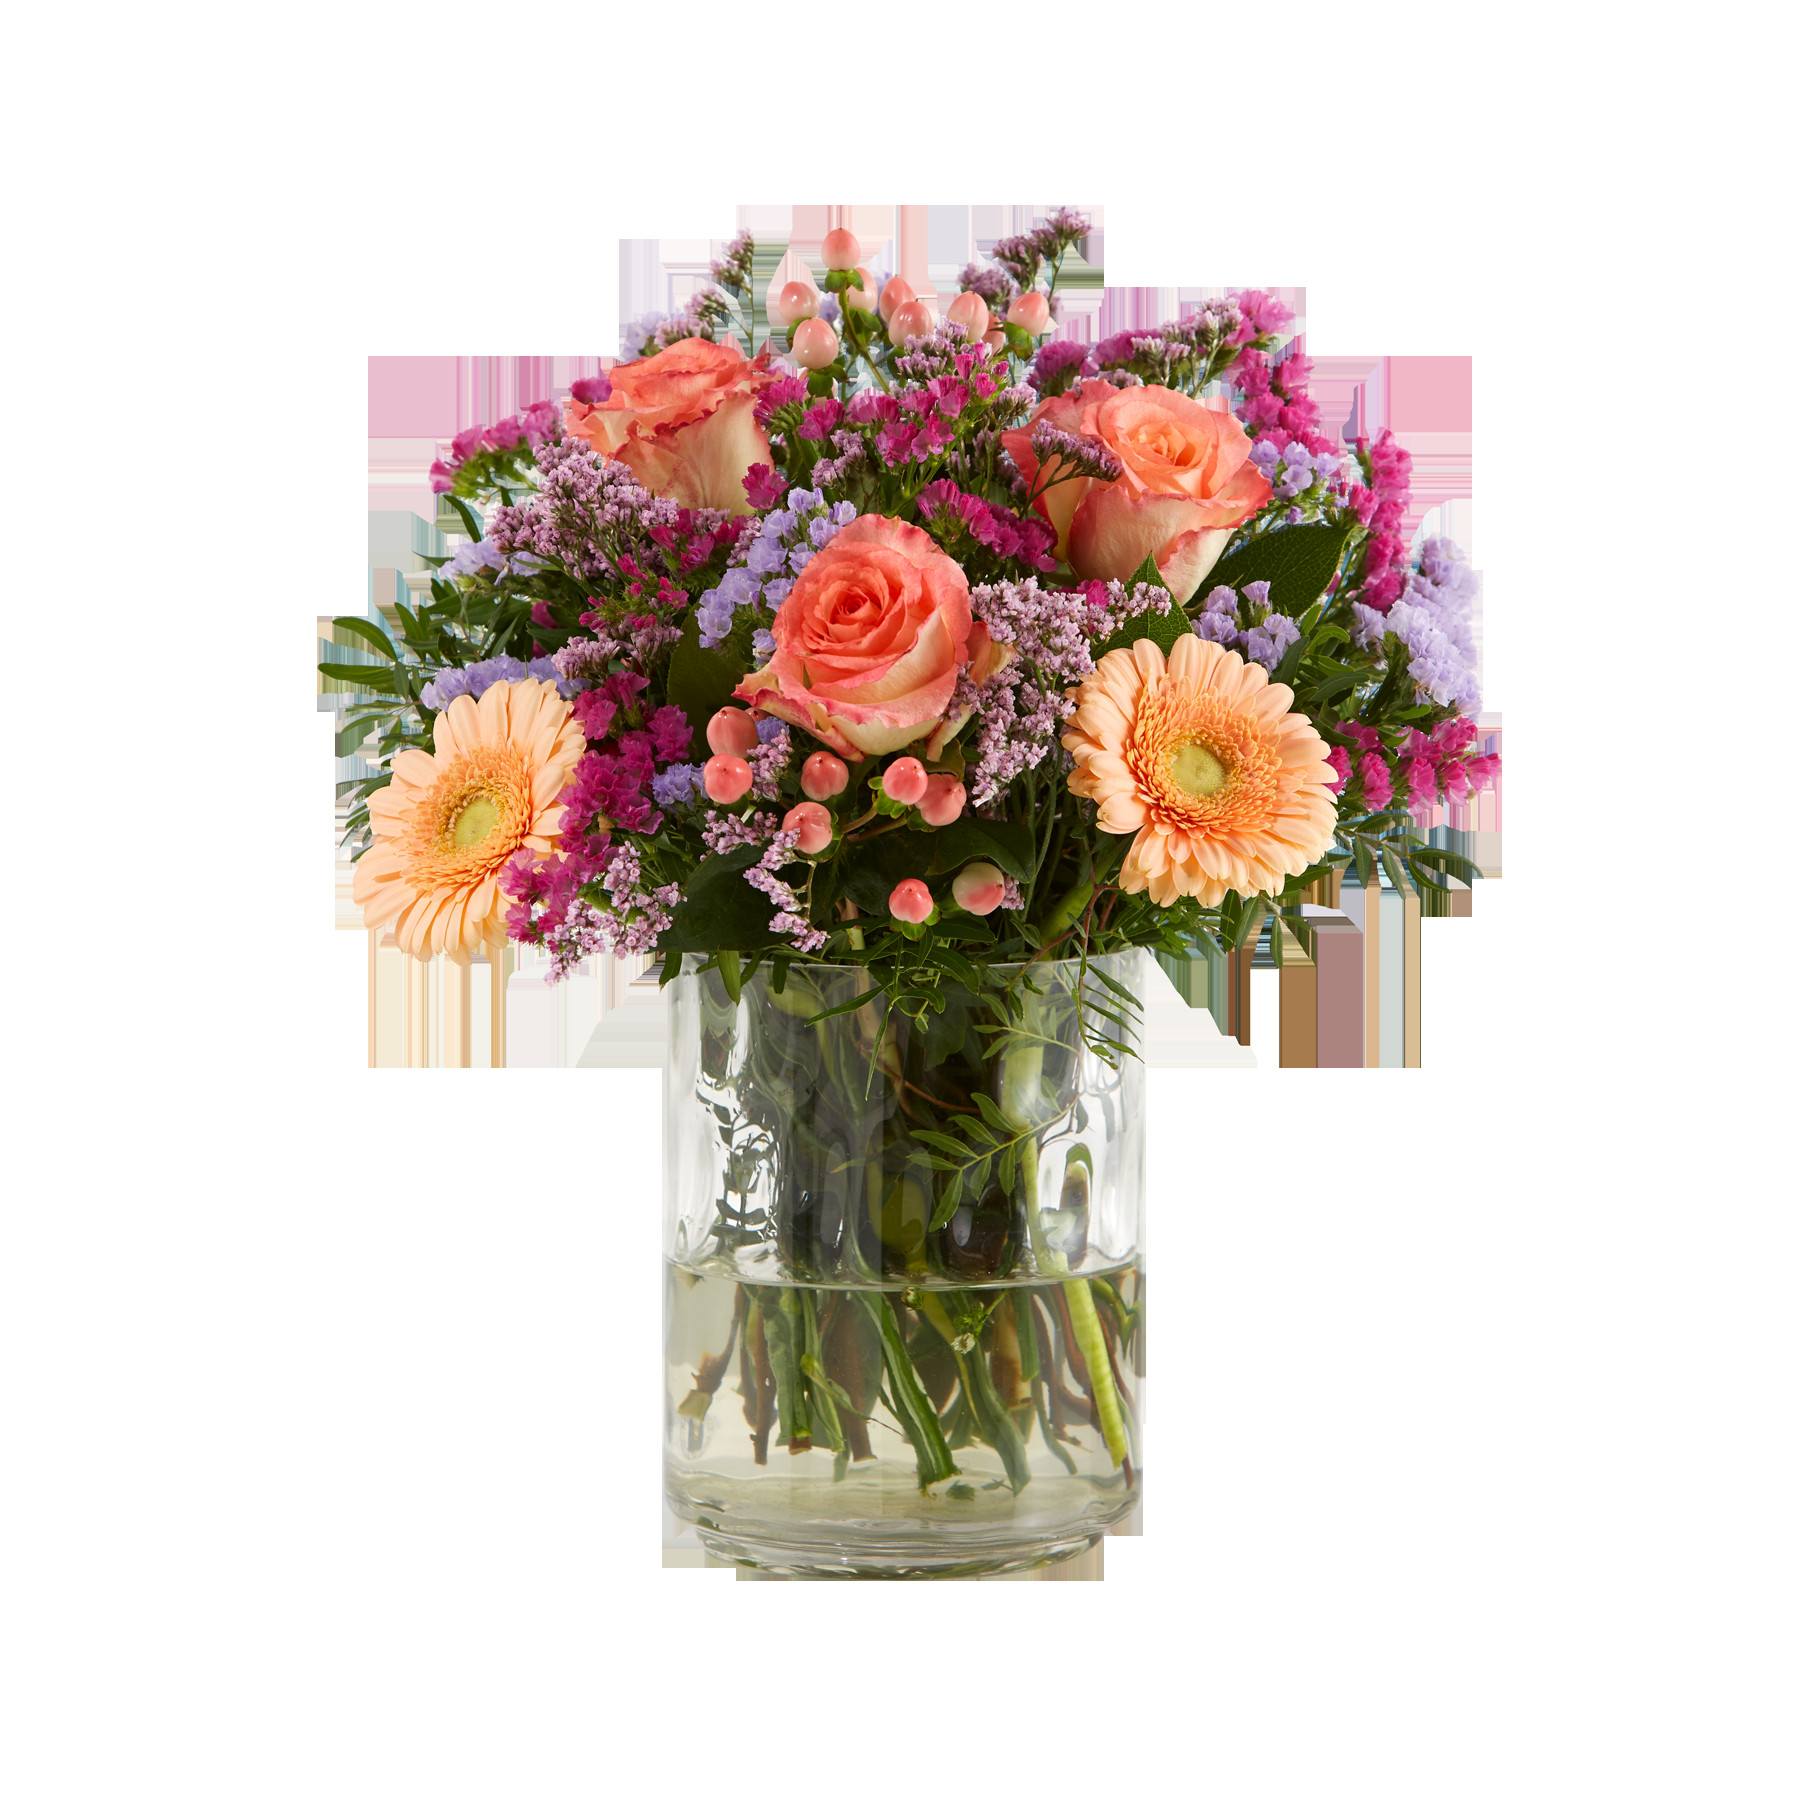 Geburtstag Blumen
 Blumen zum Geburtstag › Blumenversand Vergleich